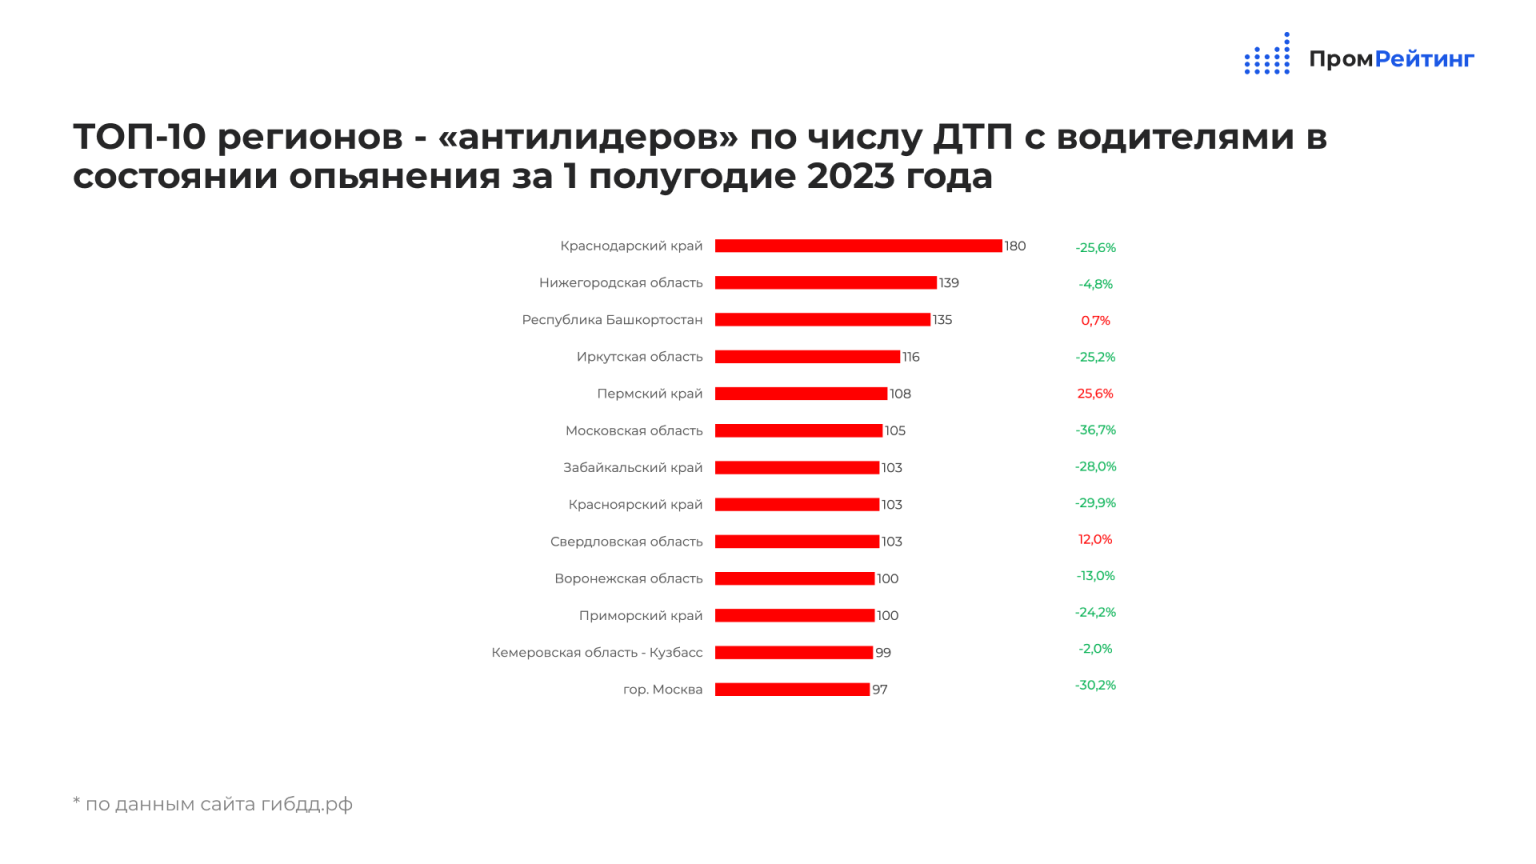 Количество регионов в России на 2023. Рейтинг губернаторов 2023 в России. Статистика ДТП В России за 2023 год. Динамический рейтинг регионов. Итоги 2023 года банки